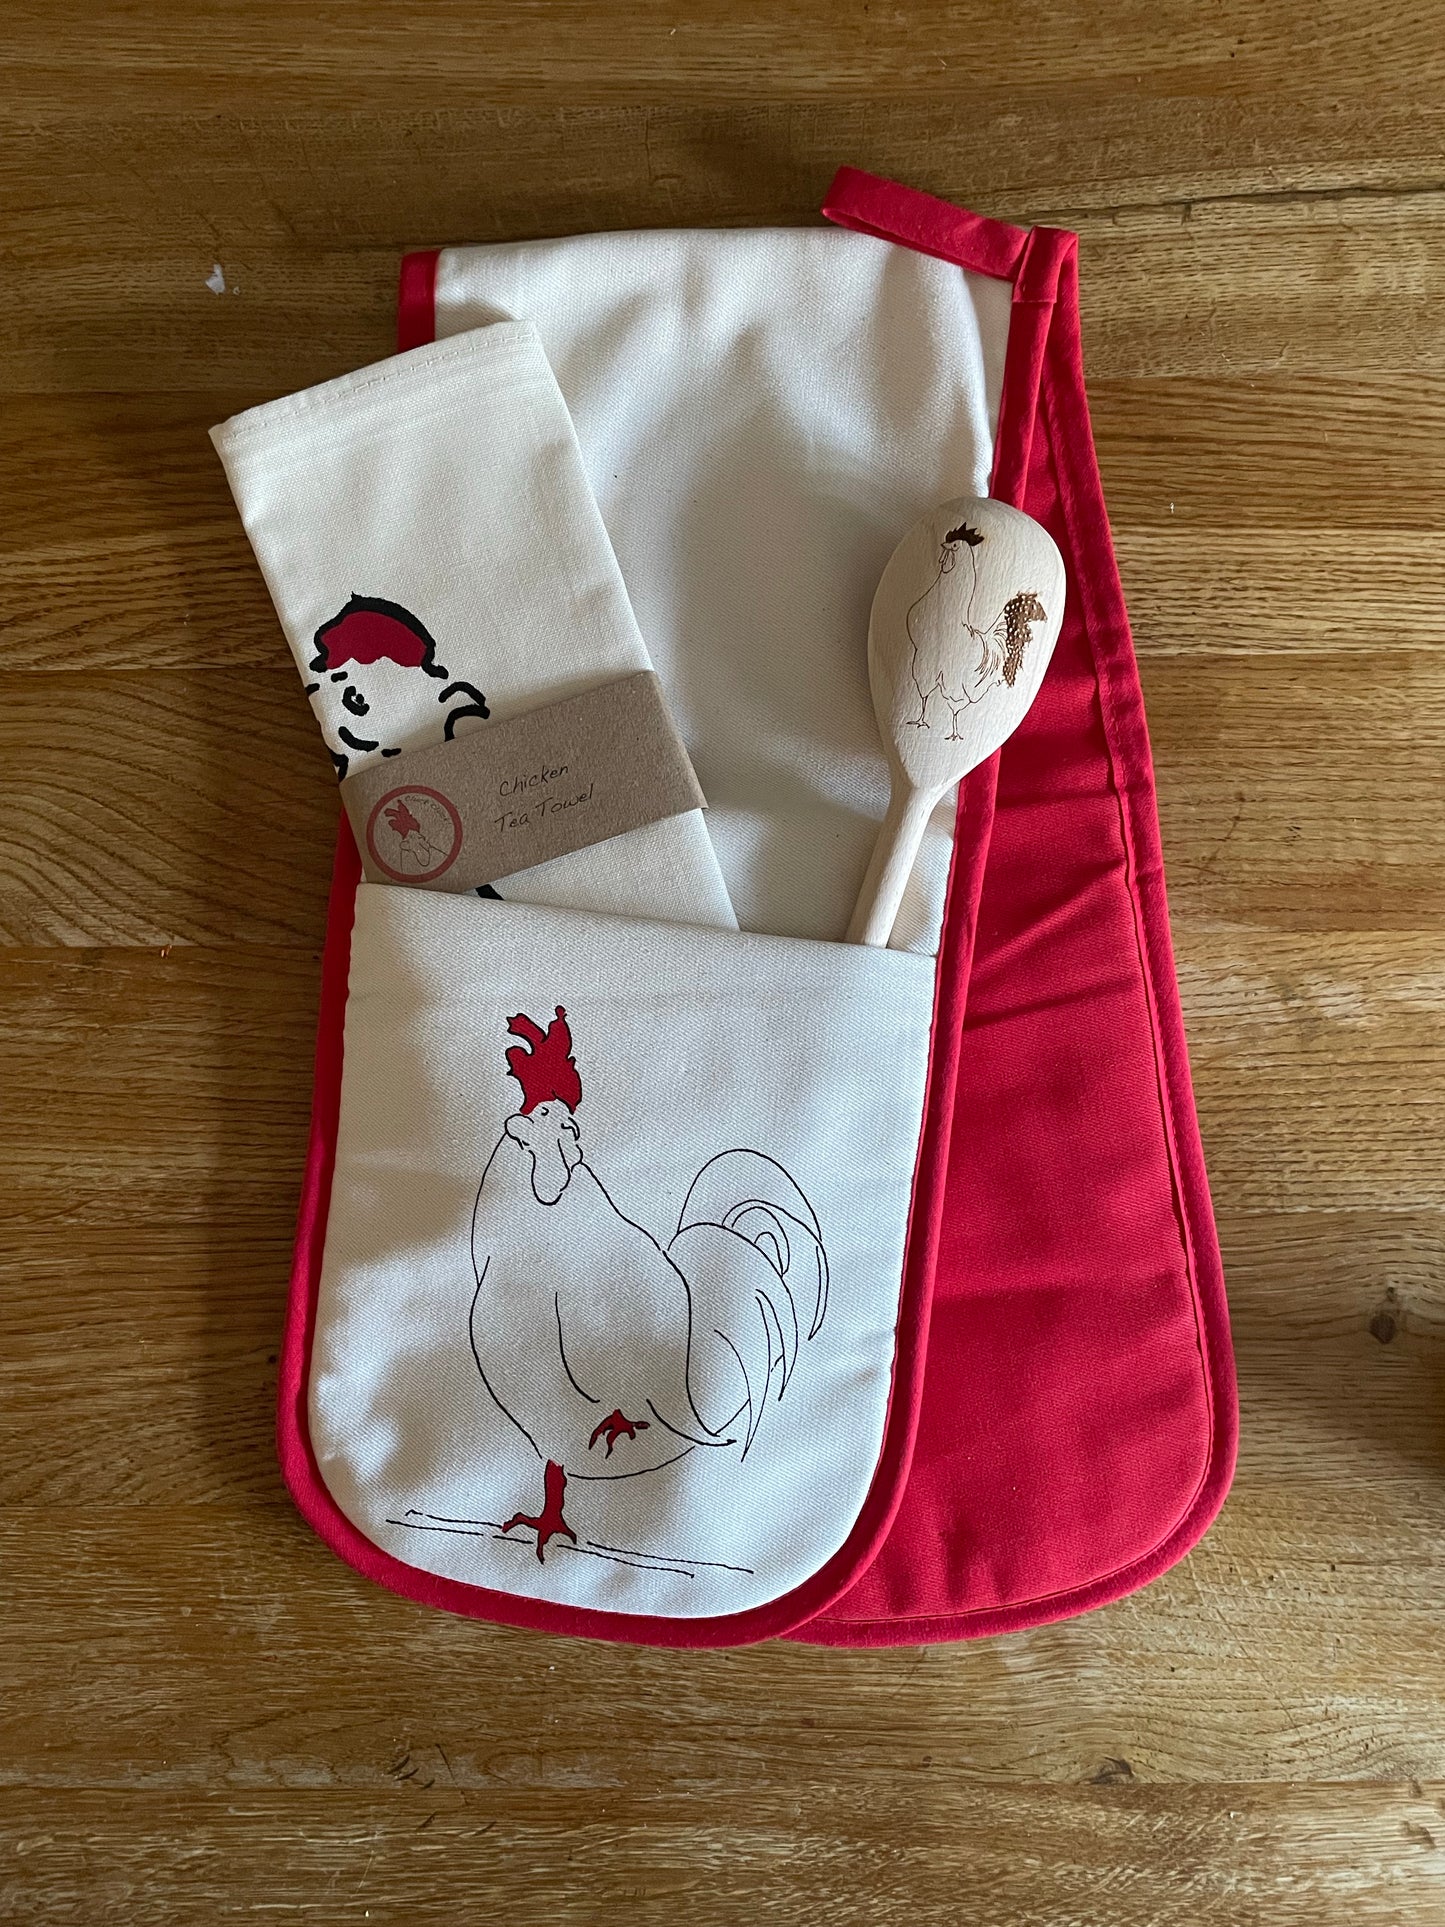 Chicken Oven Gloves